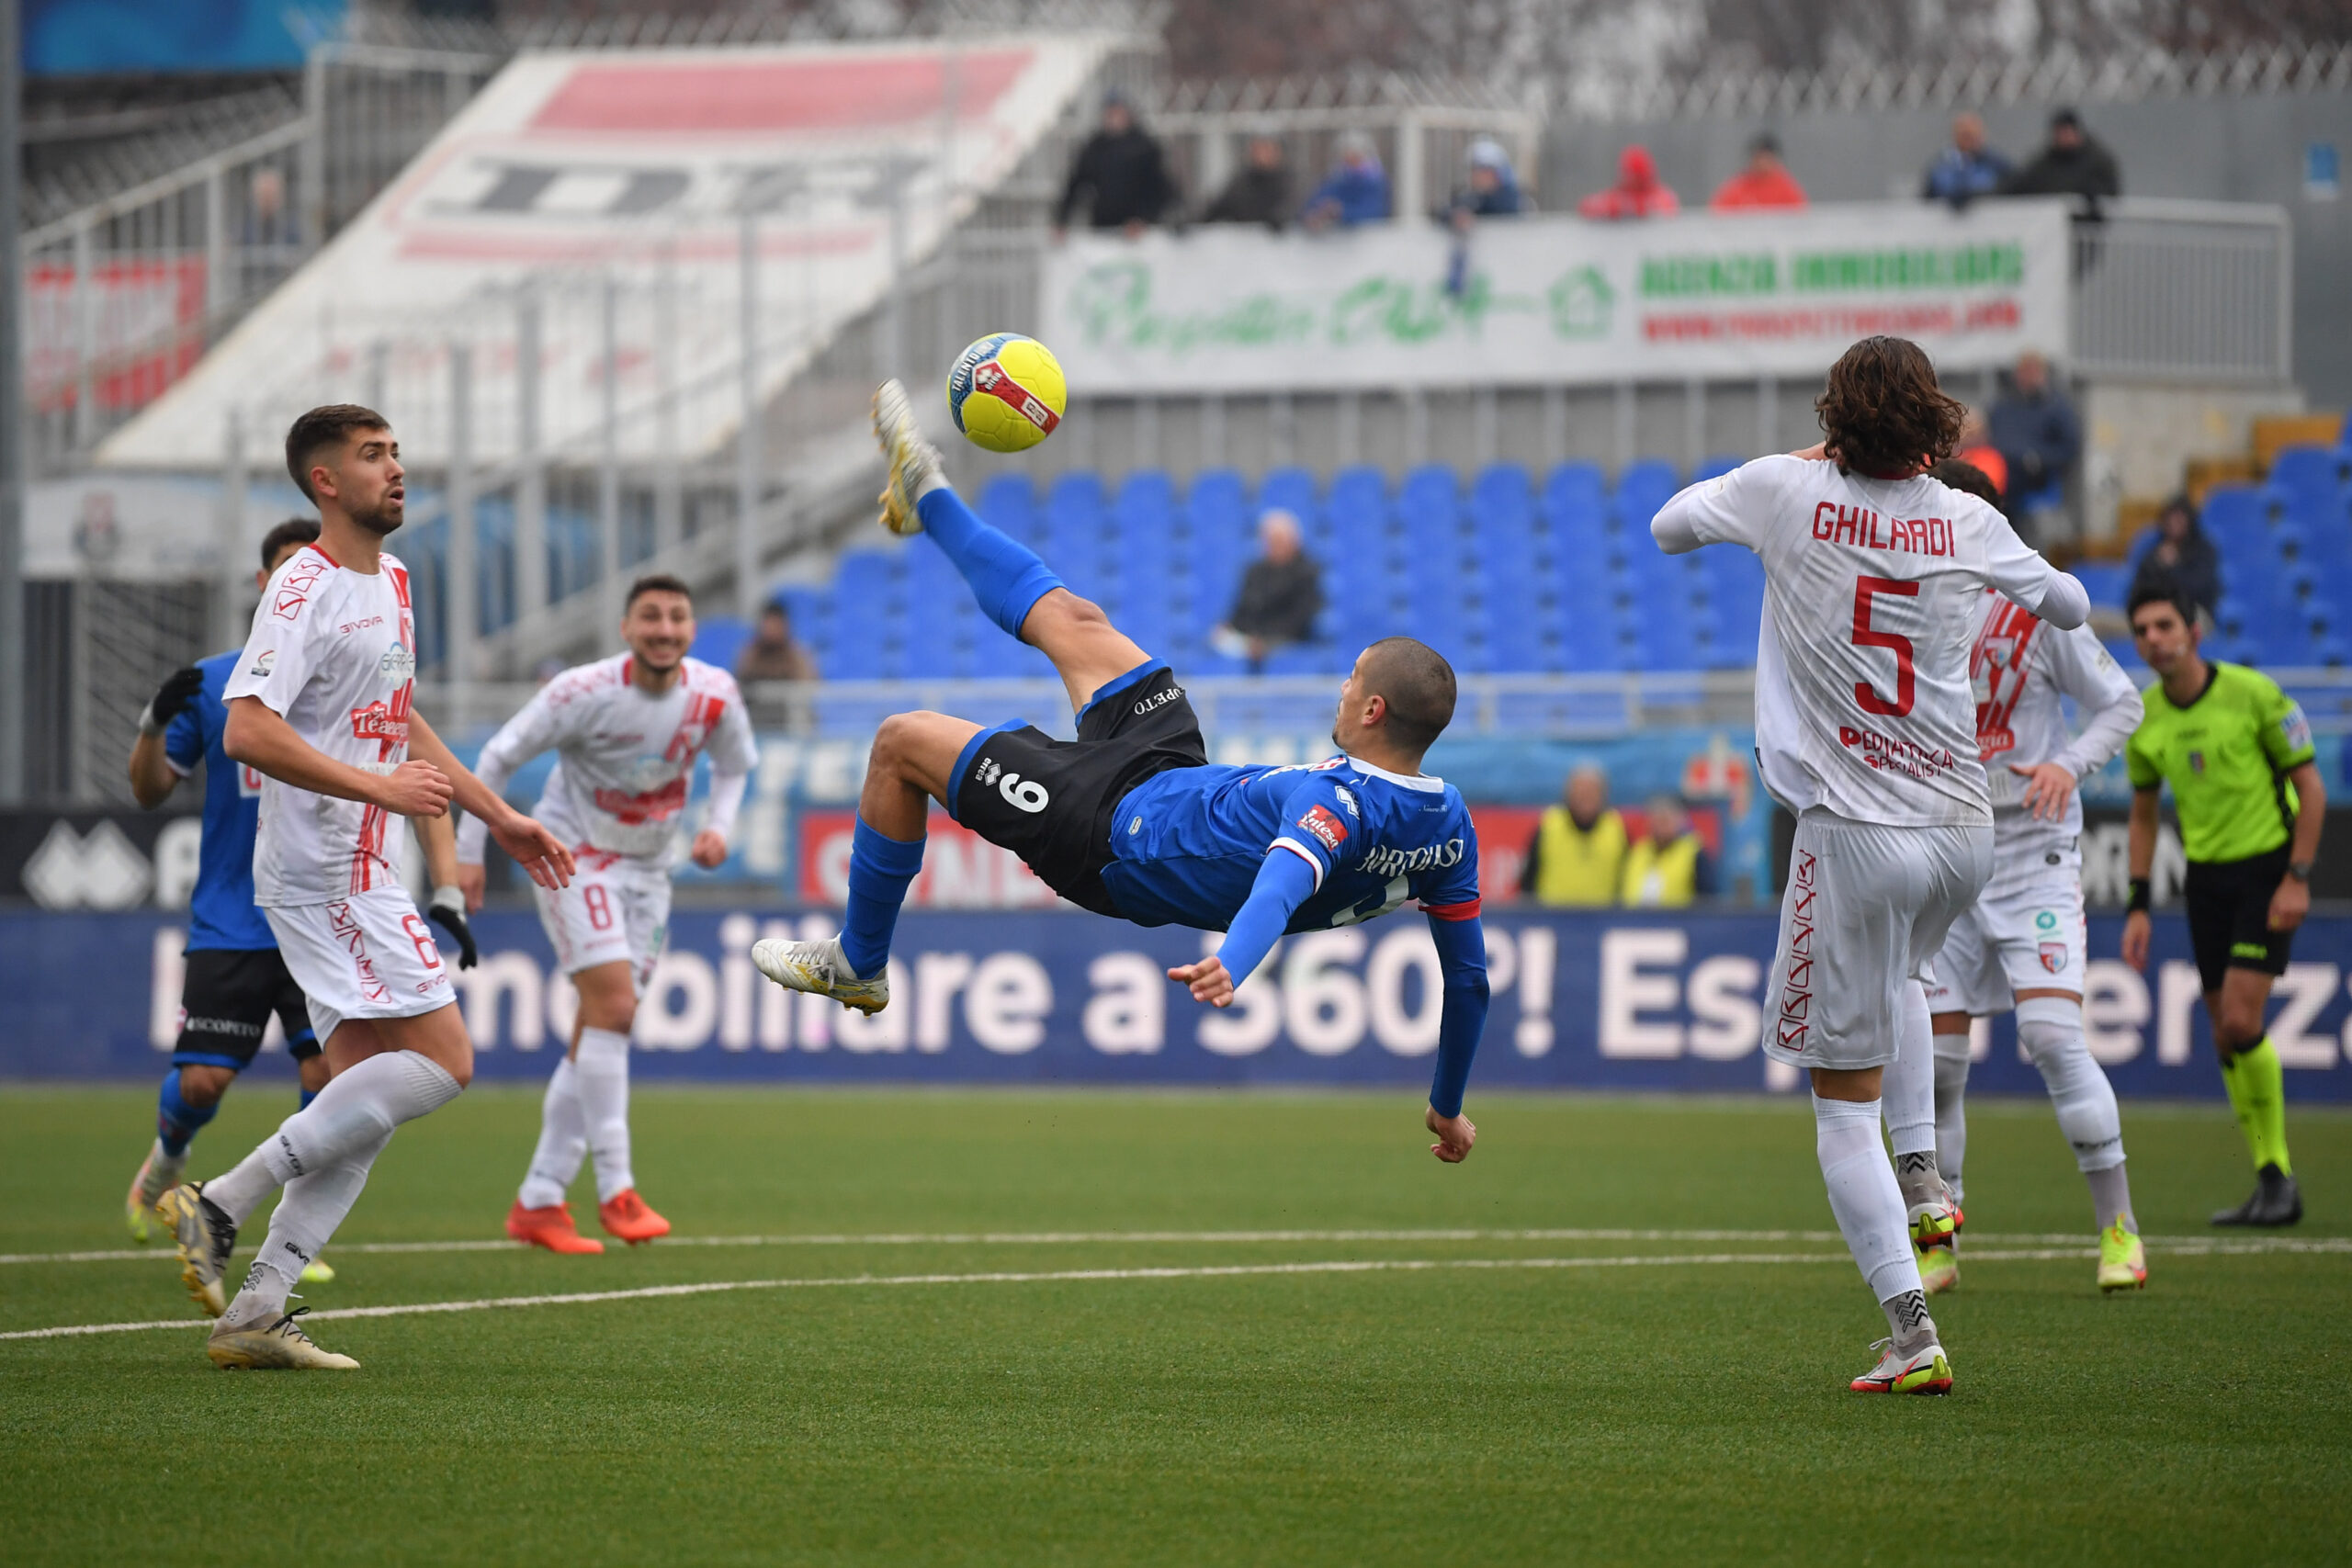 Read more about the article Novara-Mantova 5-0 | Il tabellino del match